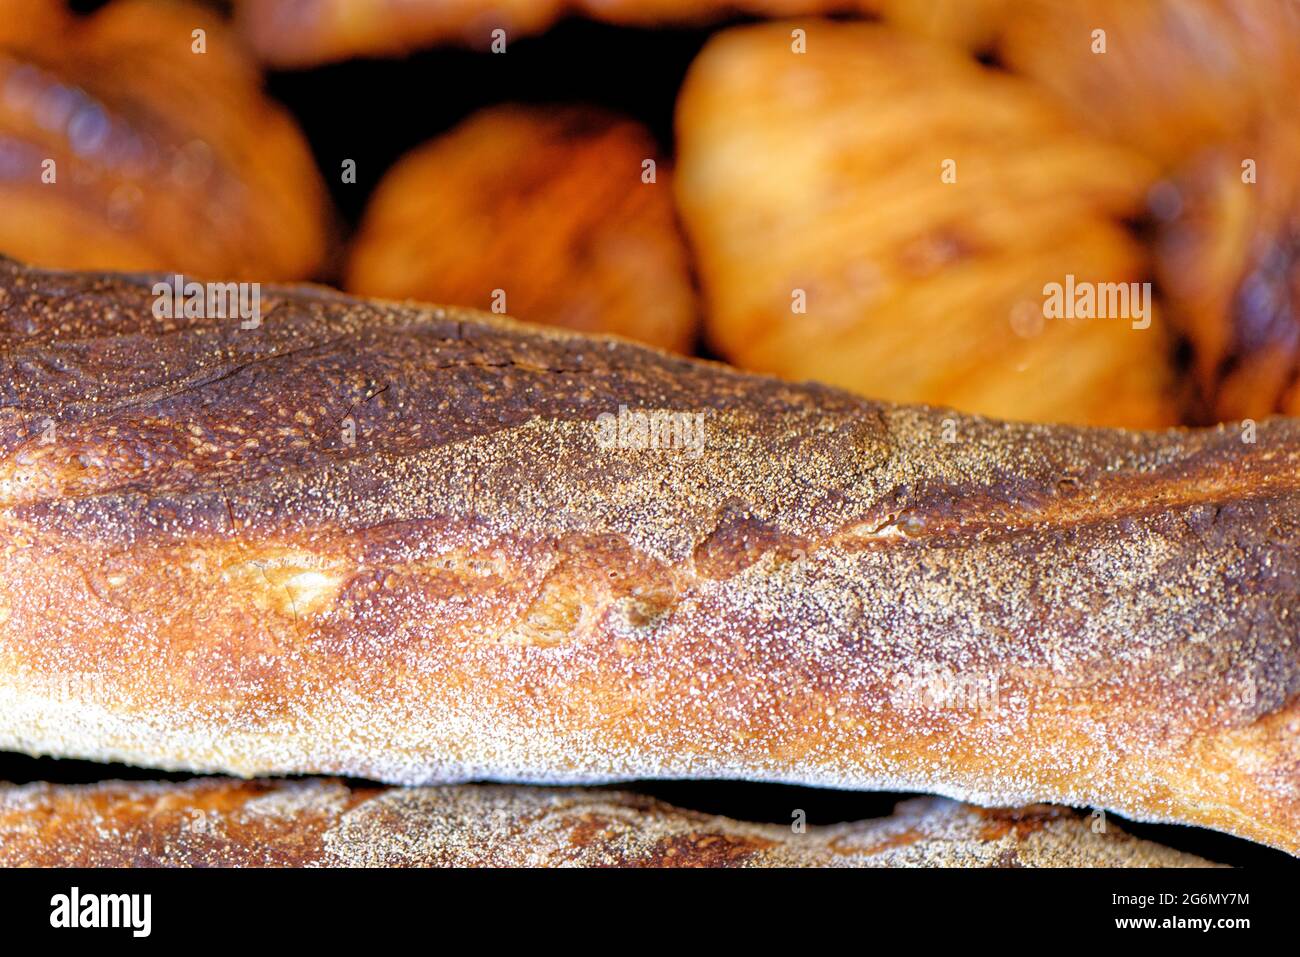 Assortiment de pâtisseries croissants, pains au chocolat et baguettes françaises - boulangerie française Banque D'Images